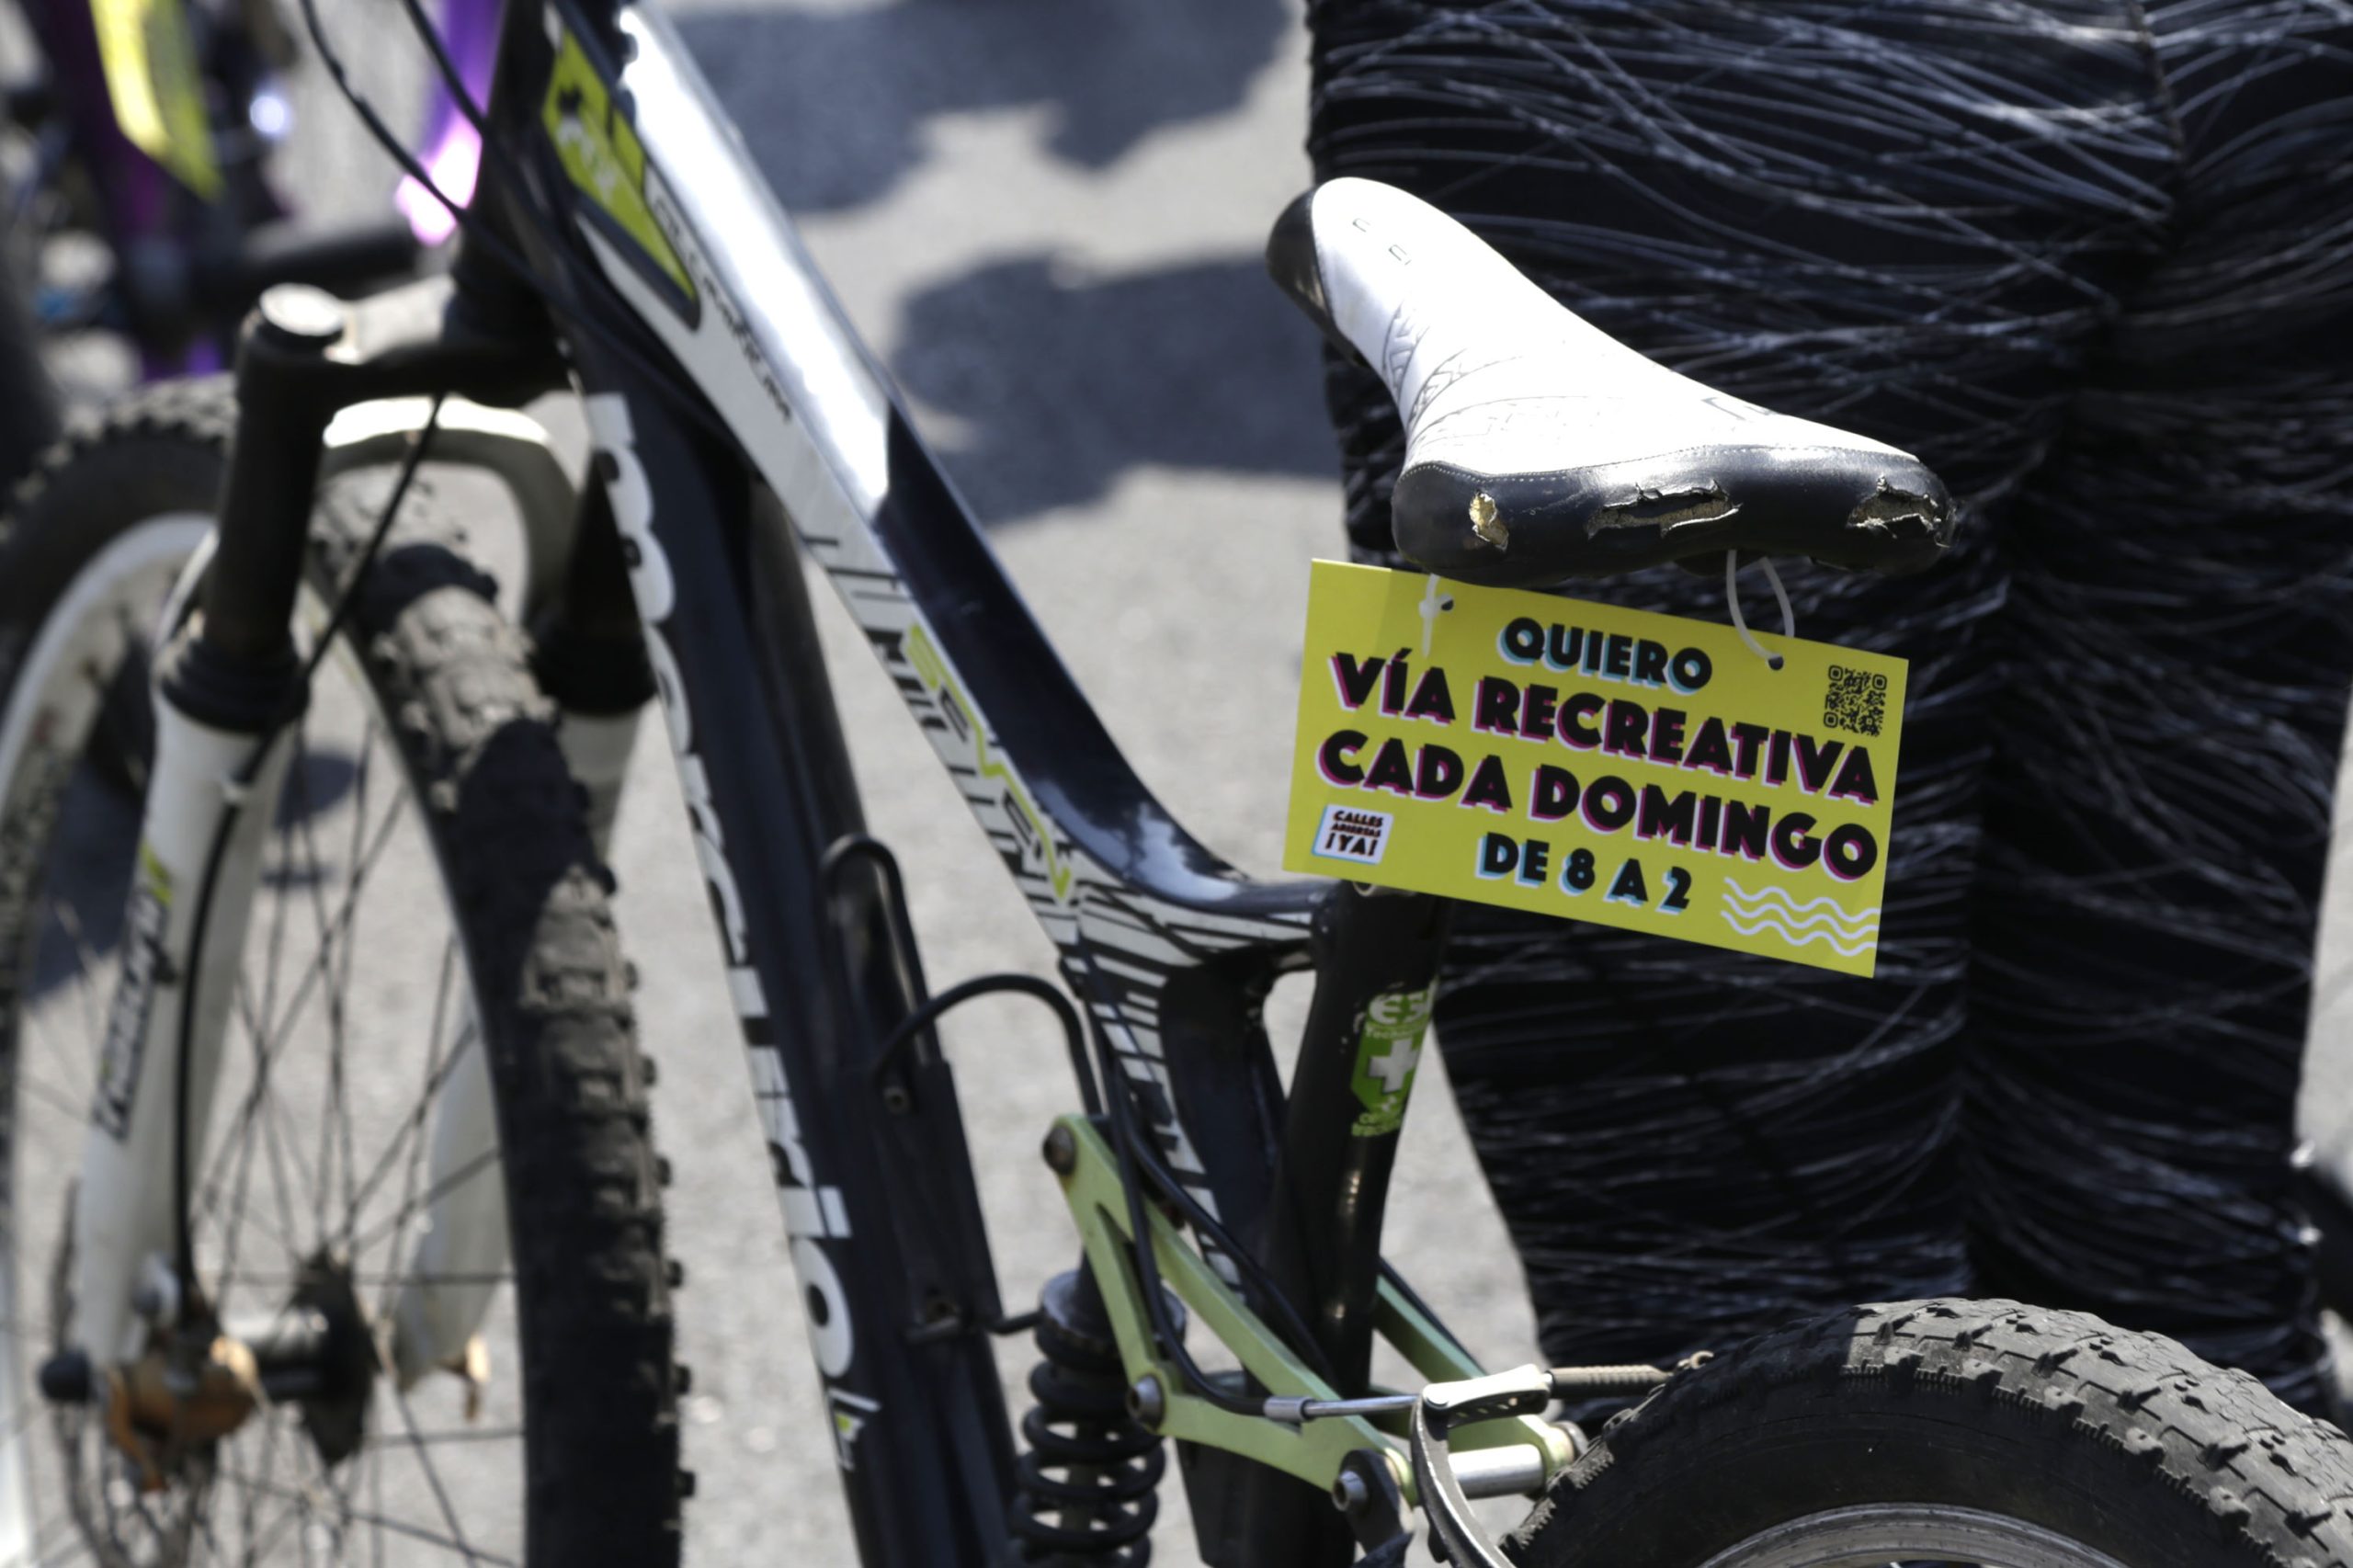 Accidentes viales aumentaron 80% en Puebla, señala activista